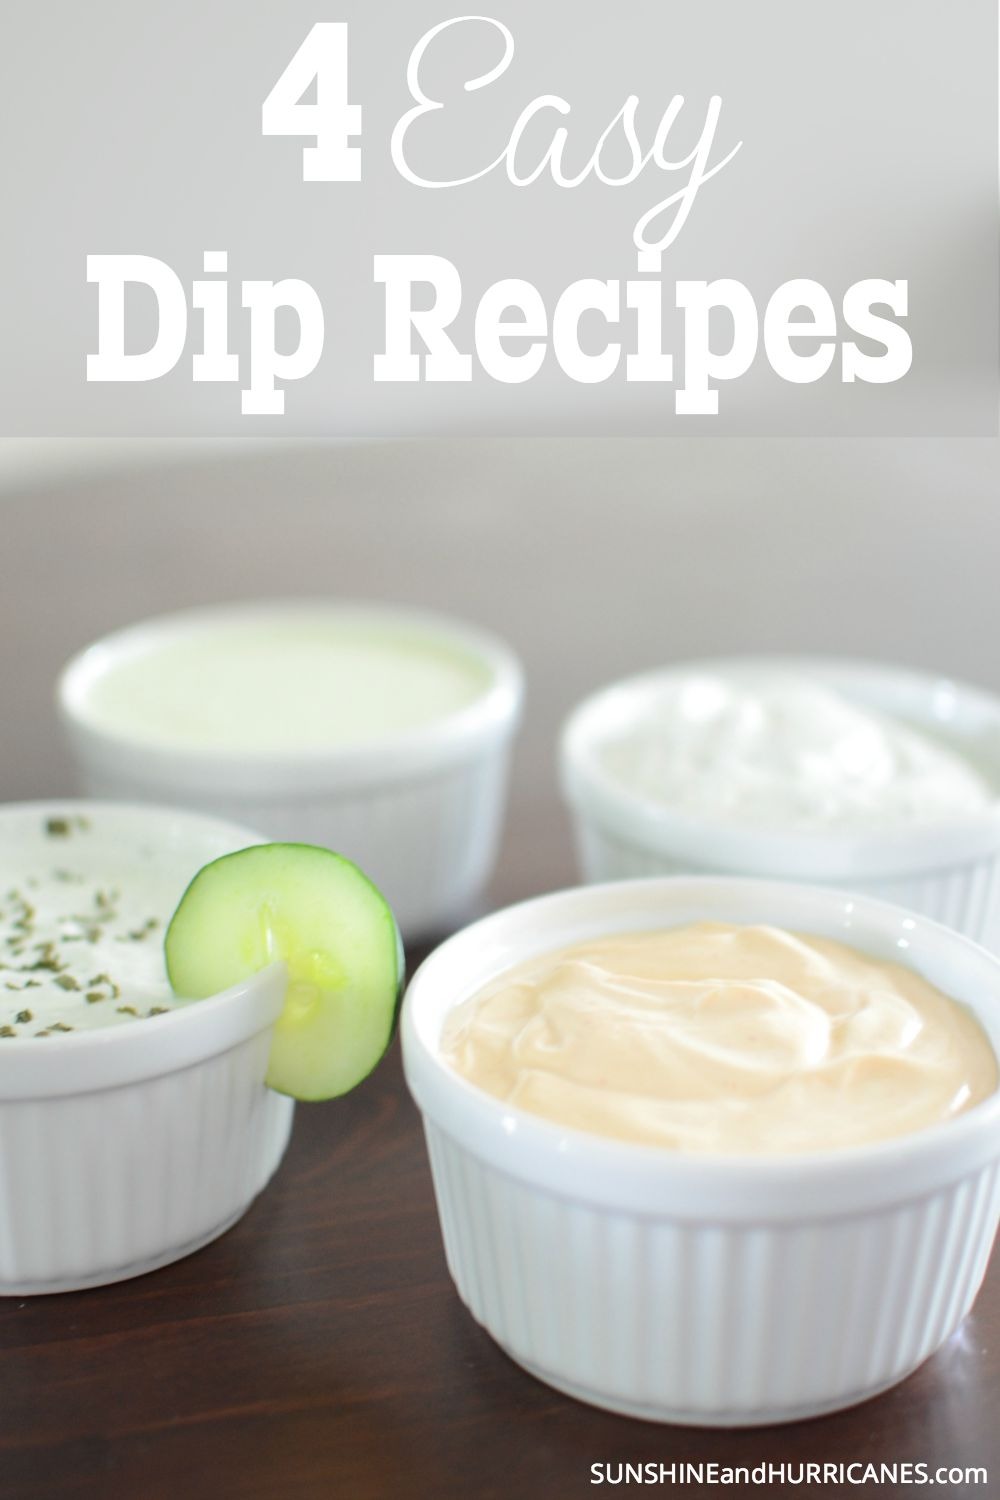 4 easy dip recipes 